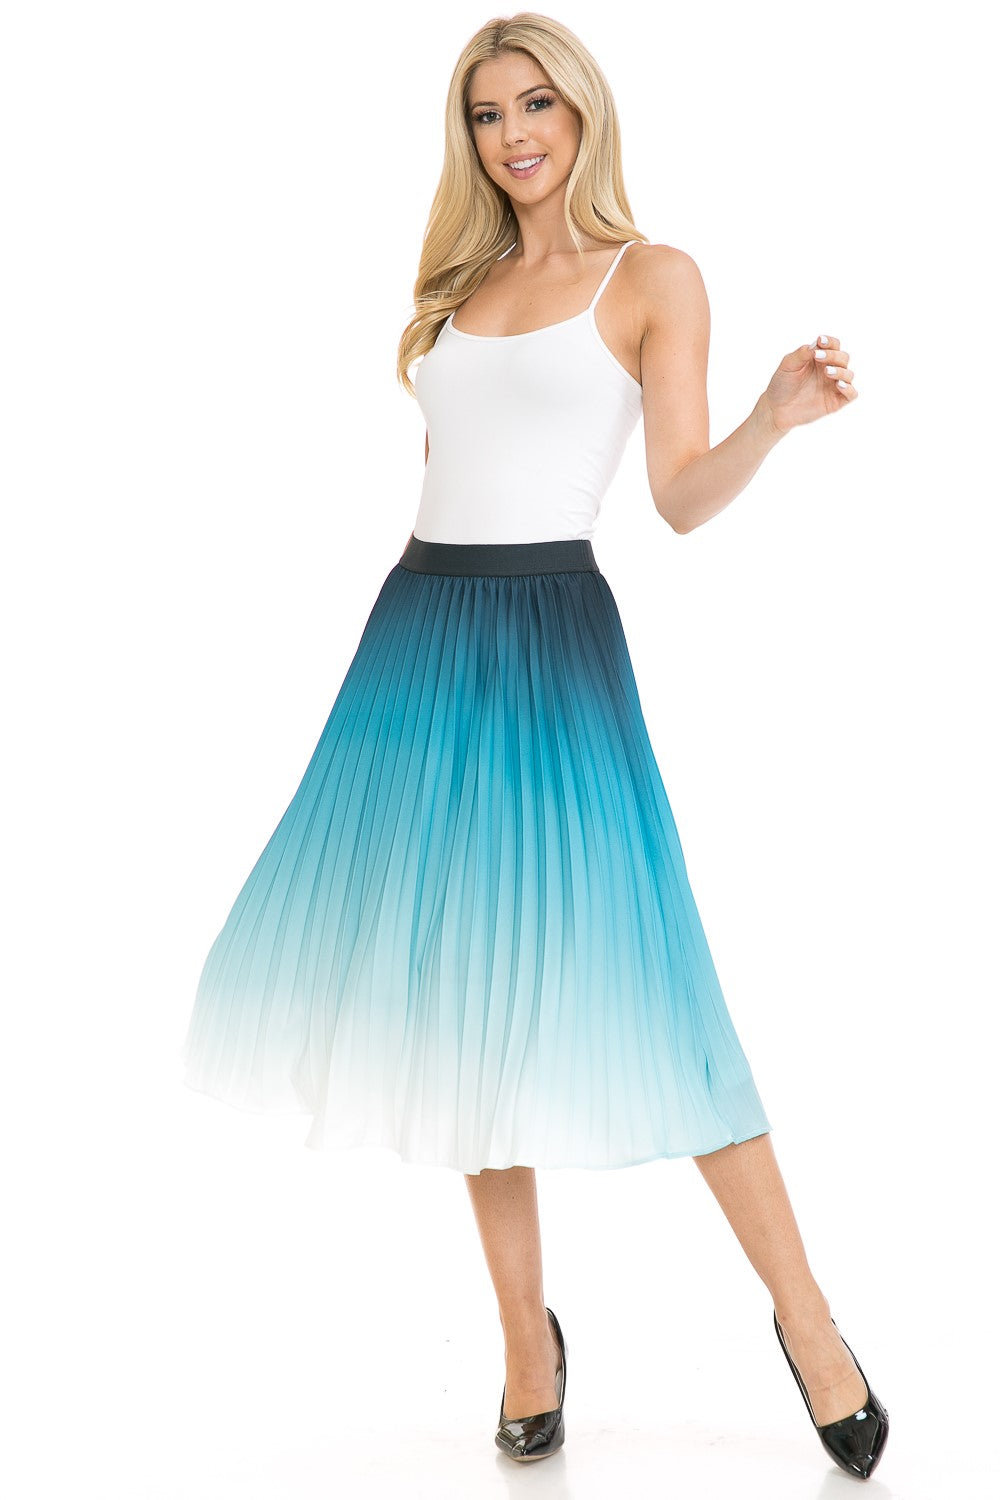 Women's High Waist Pleated A-Line Swing Skirt